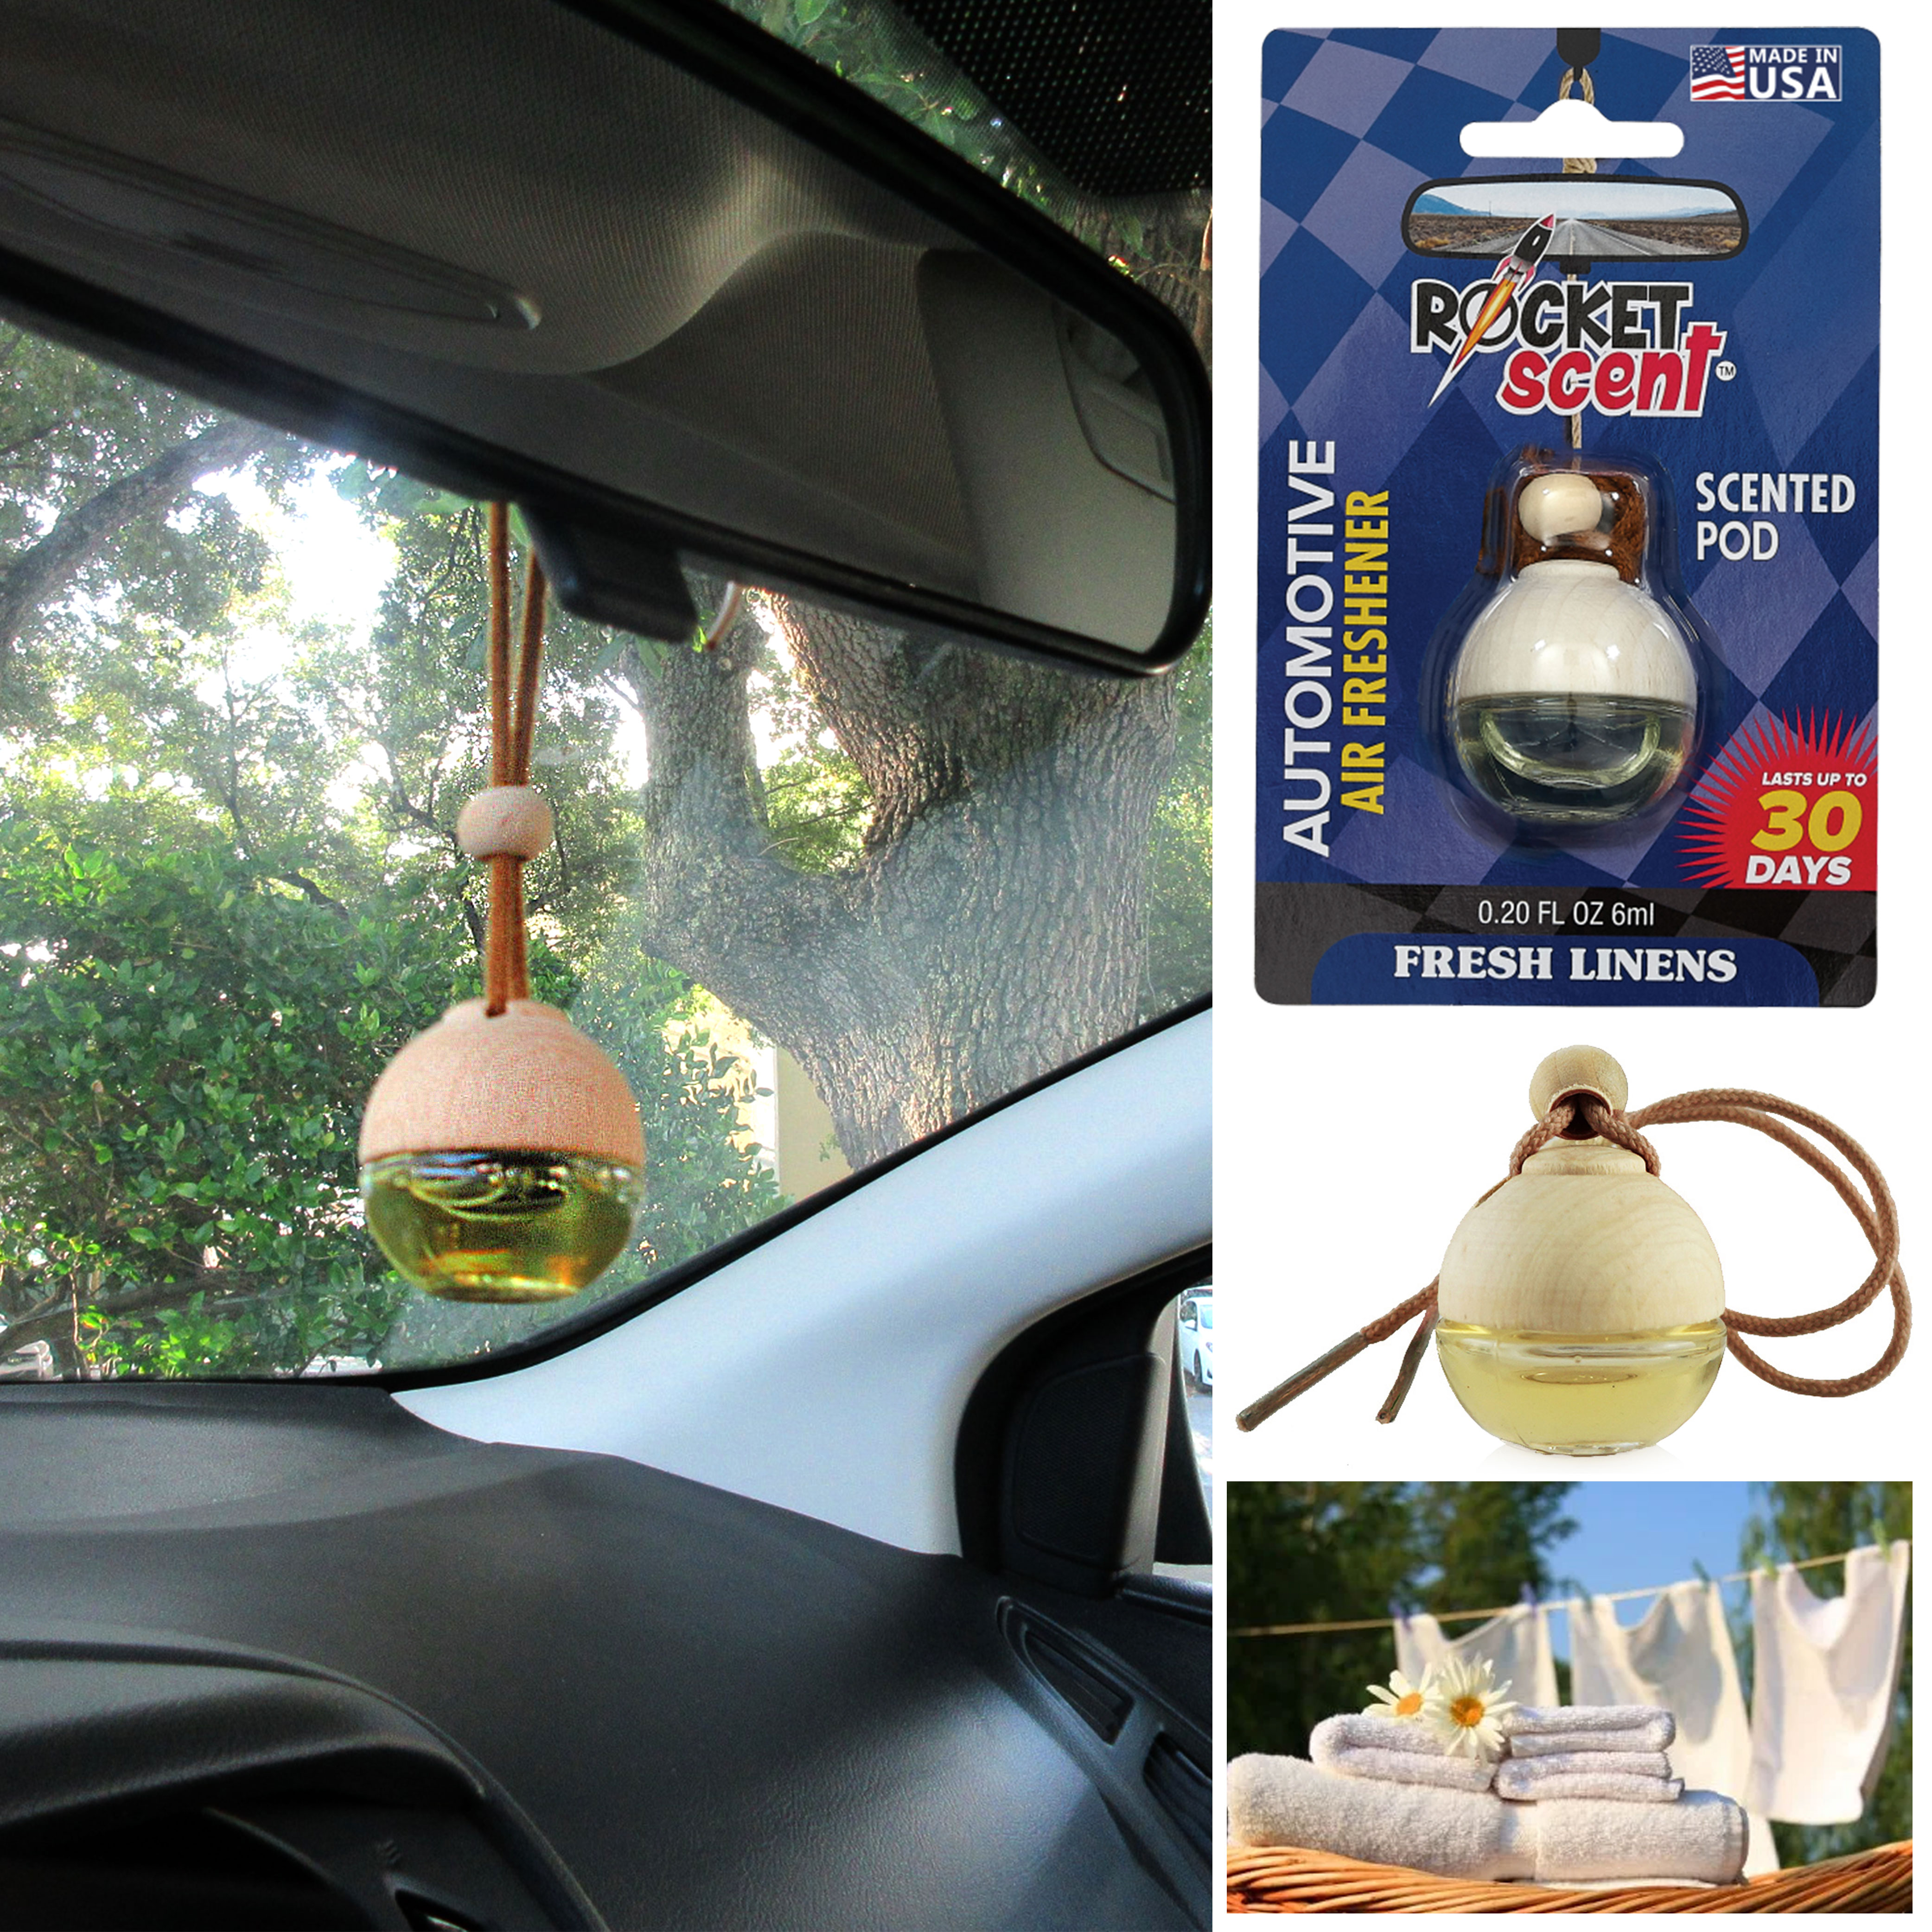 Auto Lufterfrischer für die Lüftung  Air freshener, Car air freshener,  Custom air fresheners